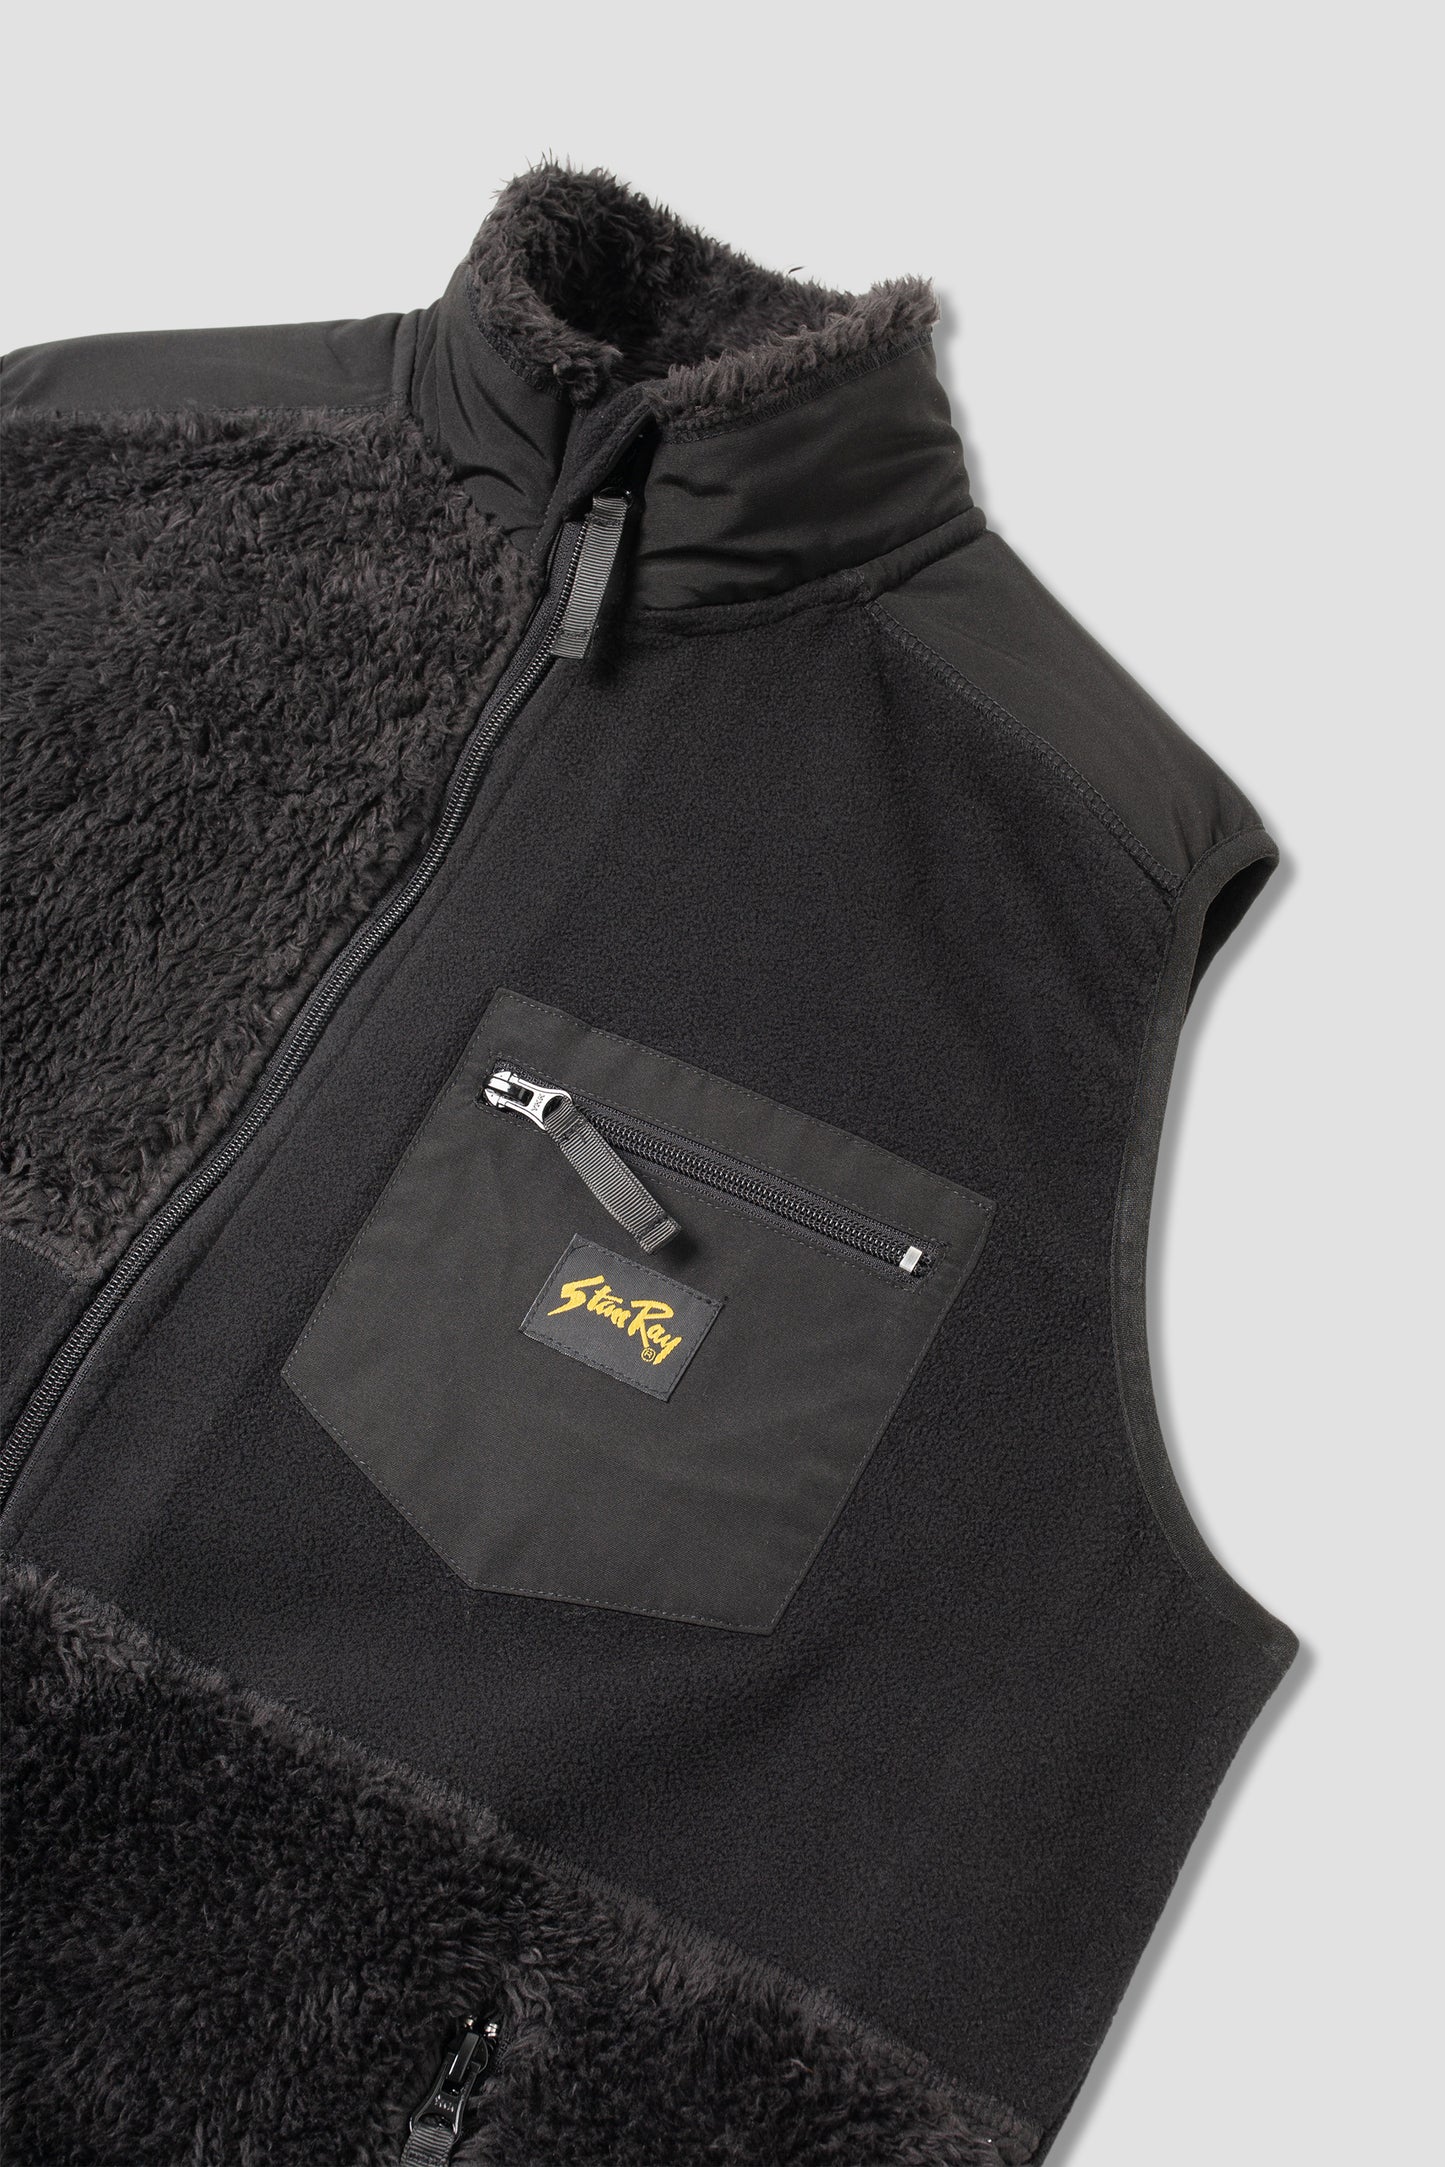 Patchwork Fleece Vest (Black)